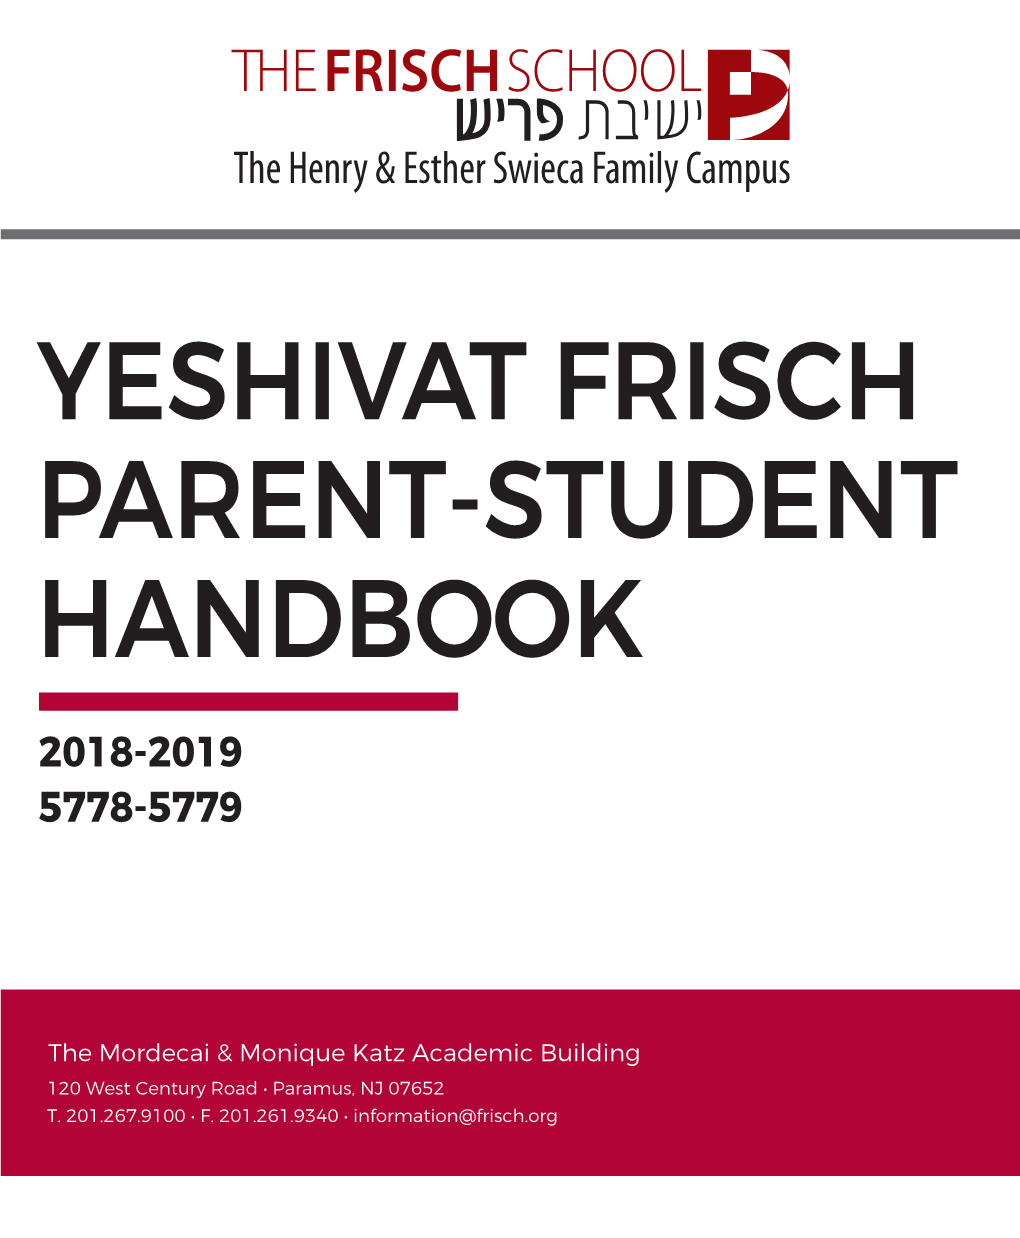 Yeshivat Frisch Parent-Student Handbook